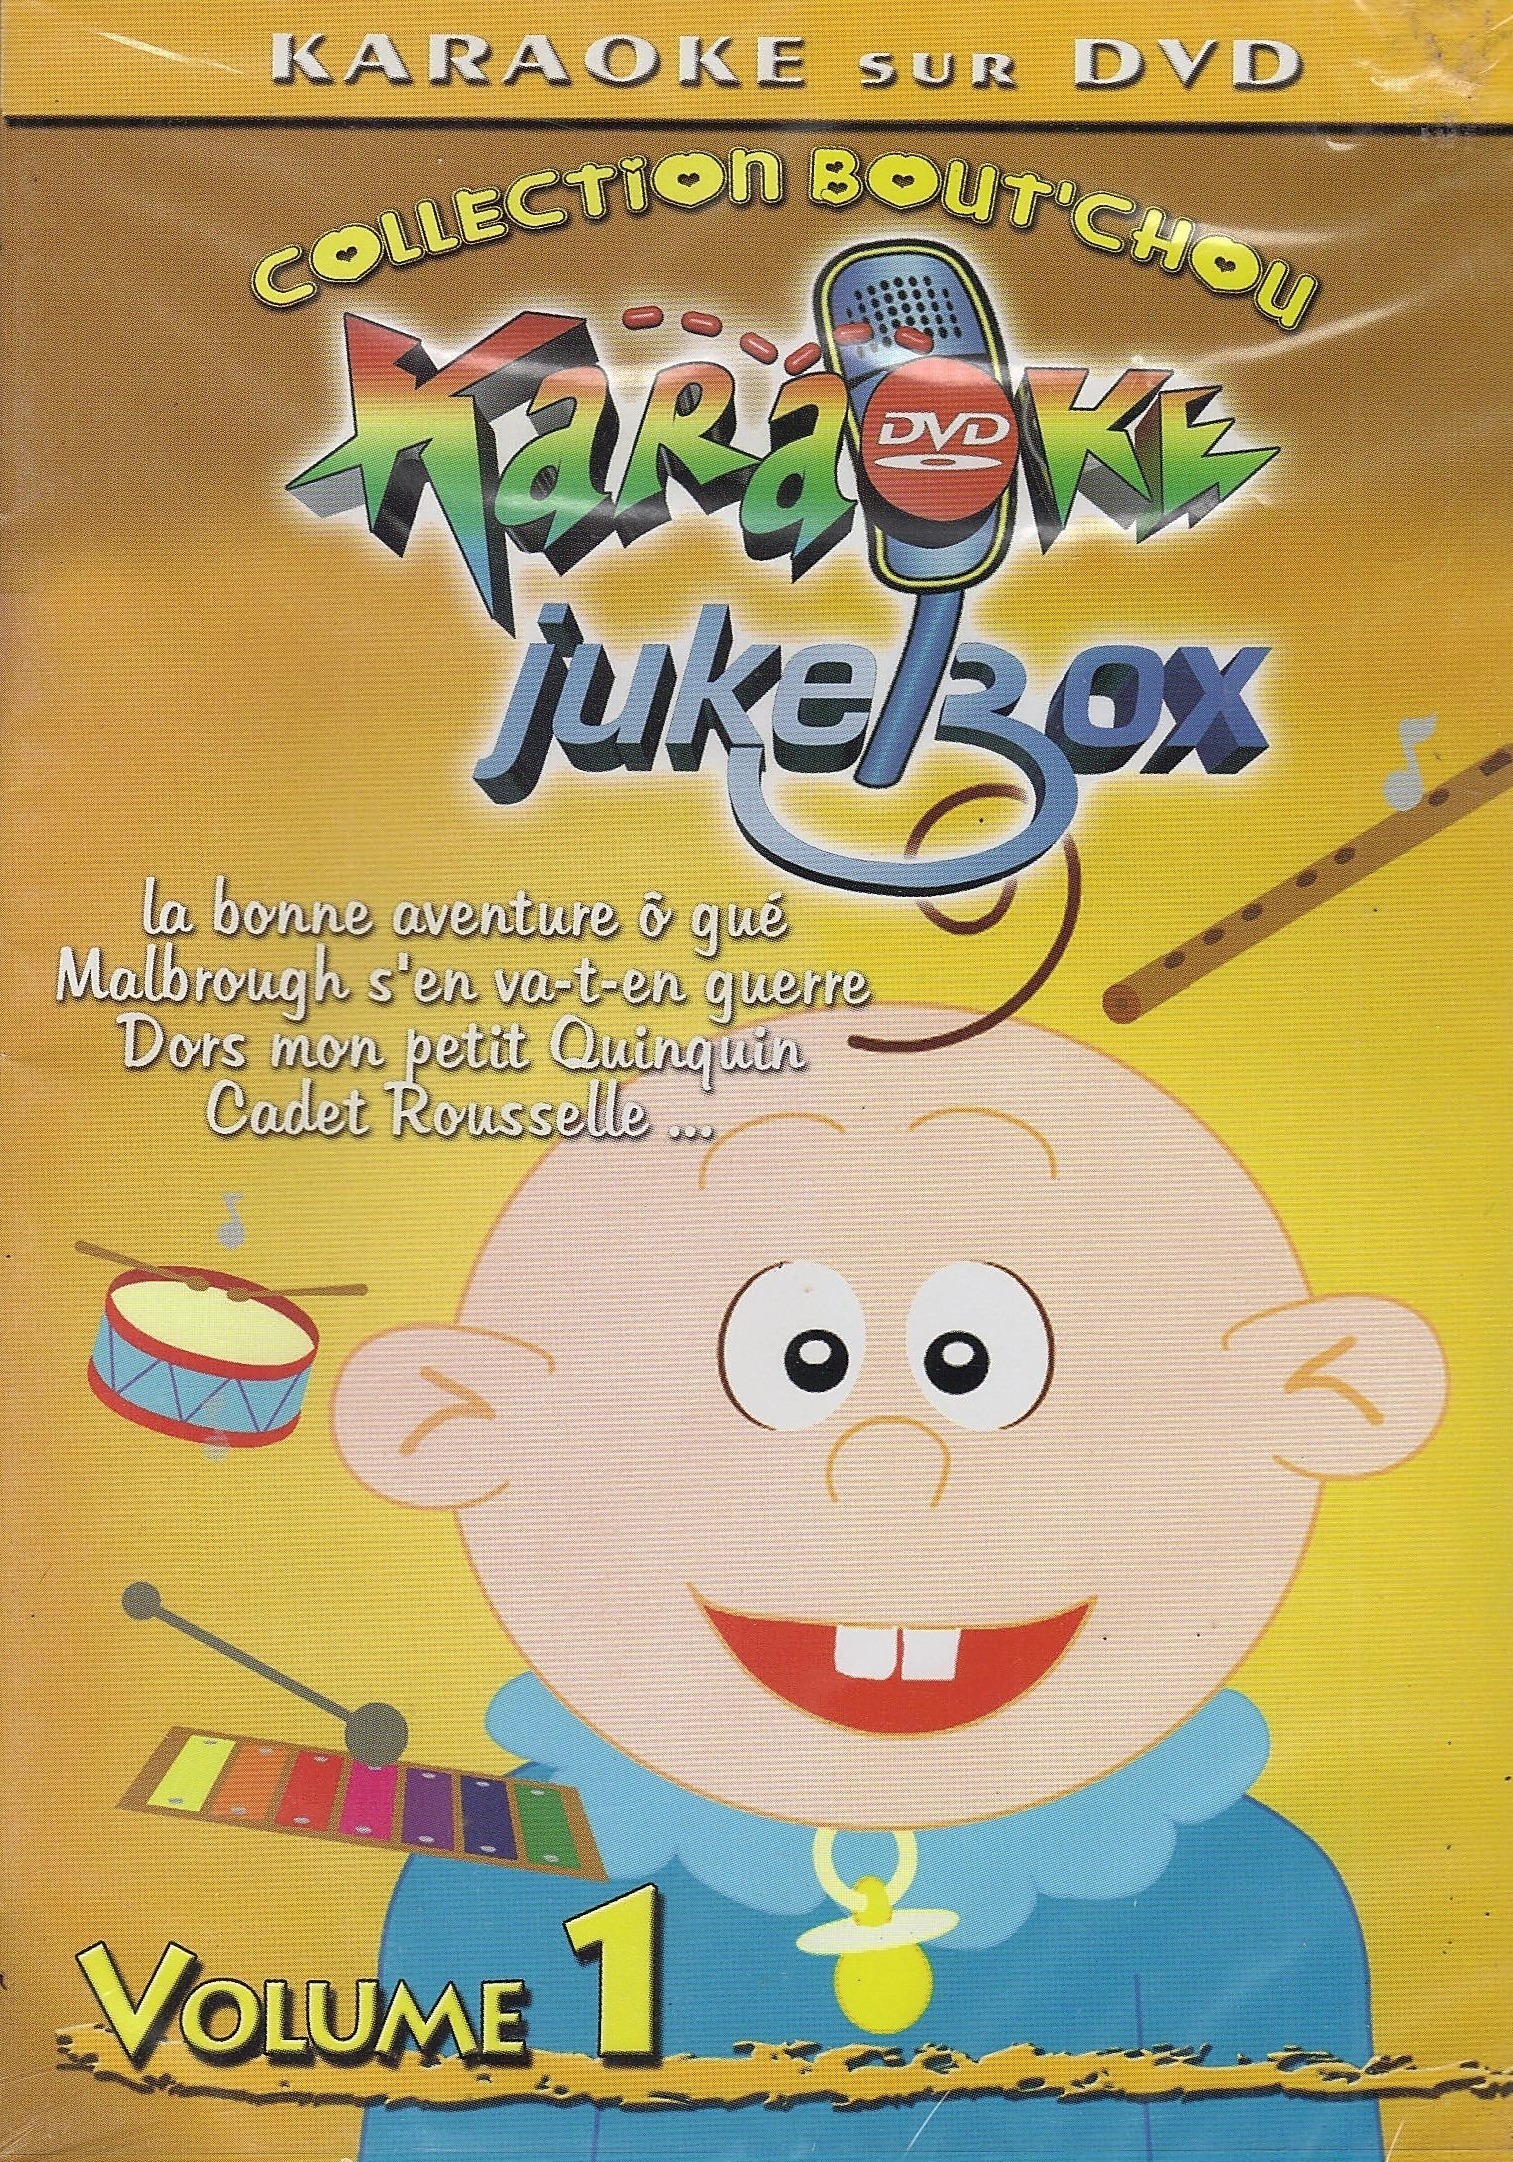 DVD KARAOKE JUKEBOX